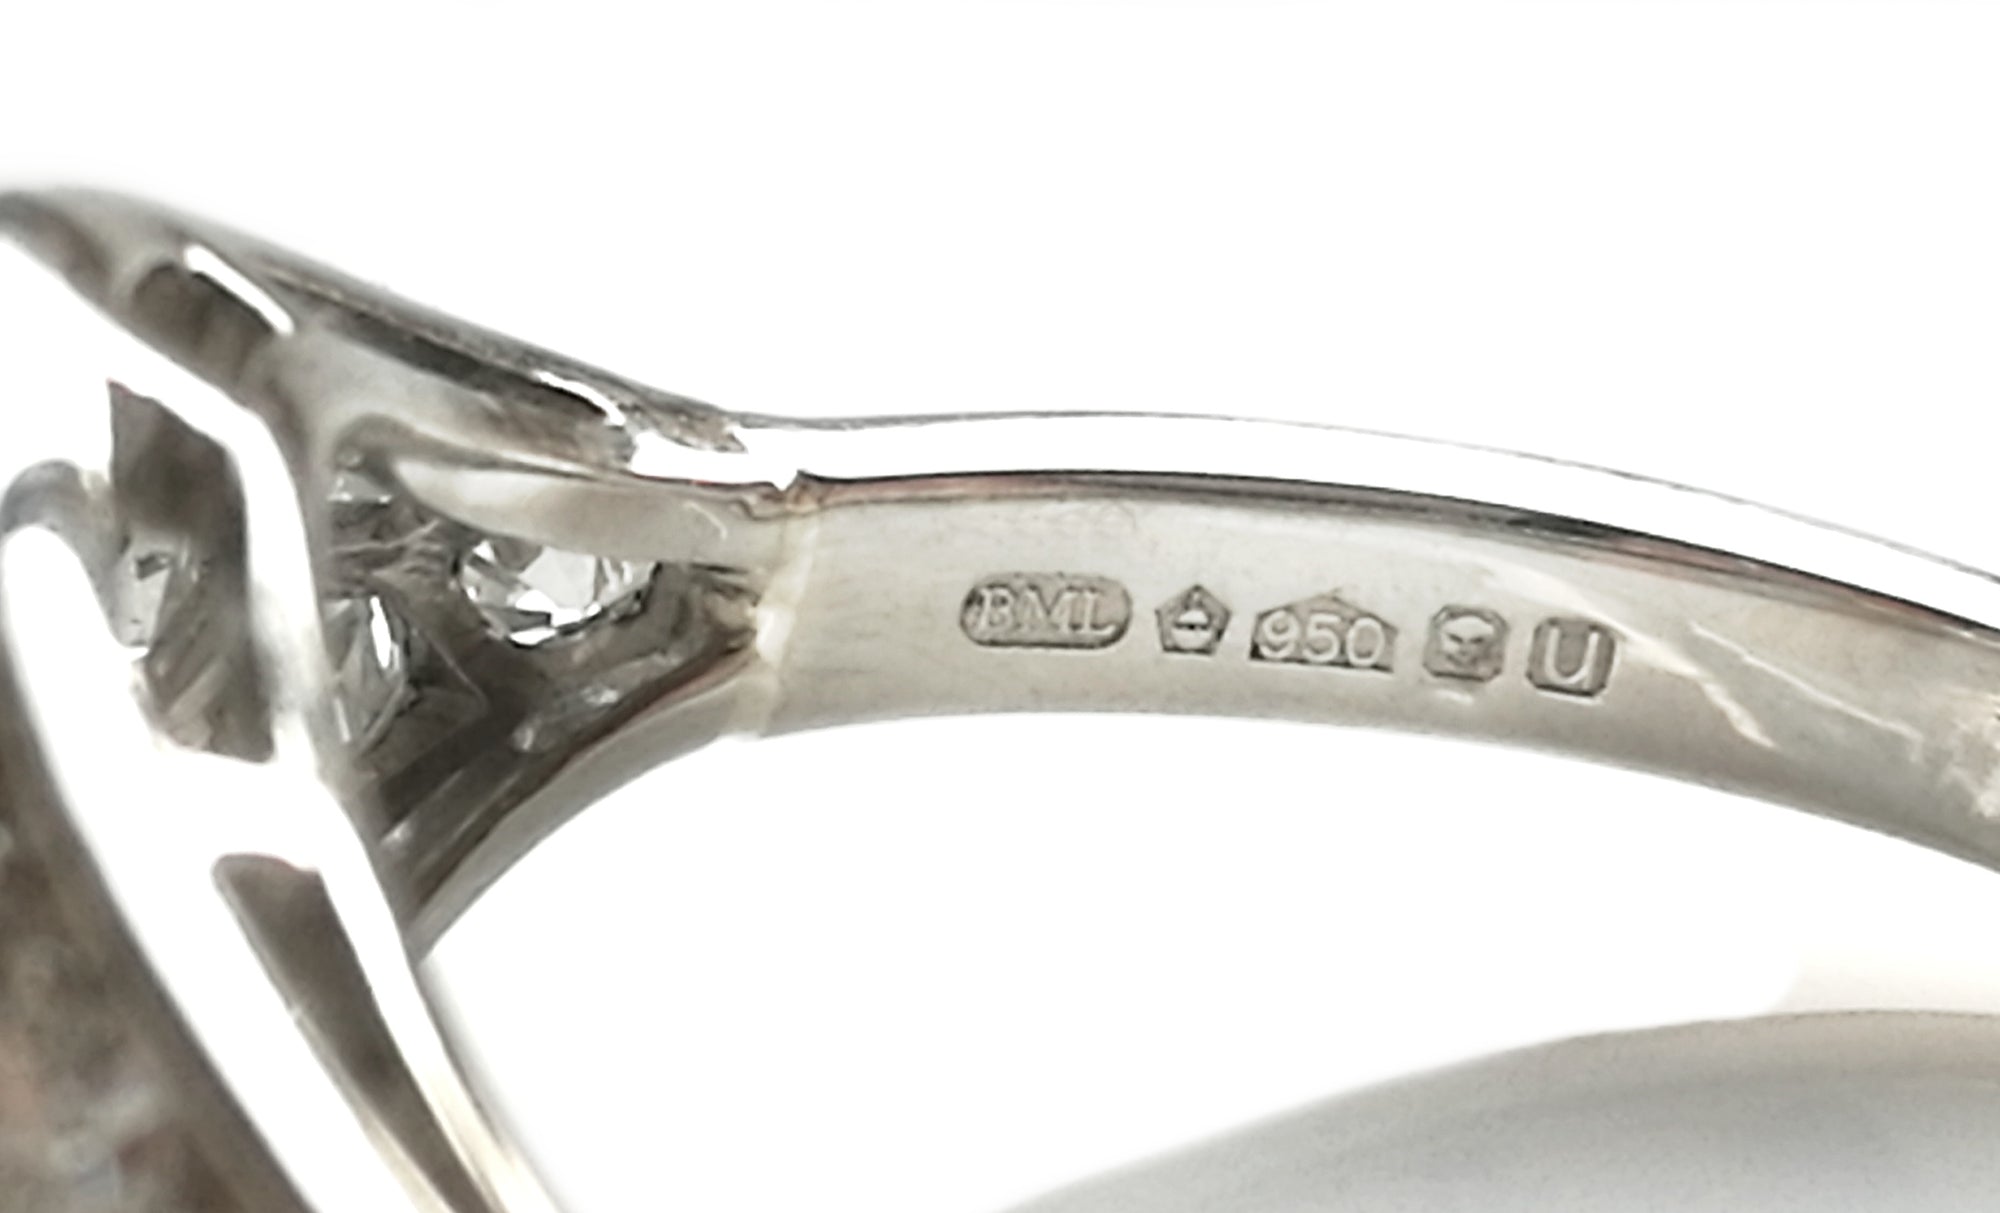 Original Art Deco 1ct Old Cut Diamond Bombe Platinum Engagement Ring